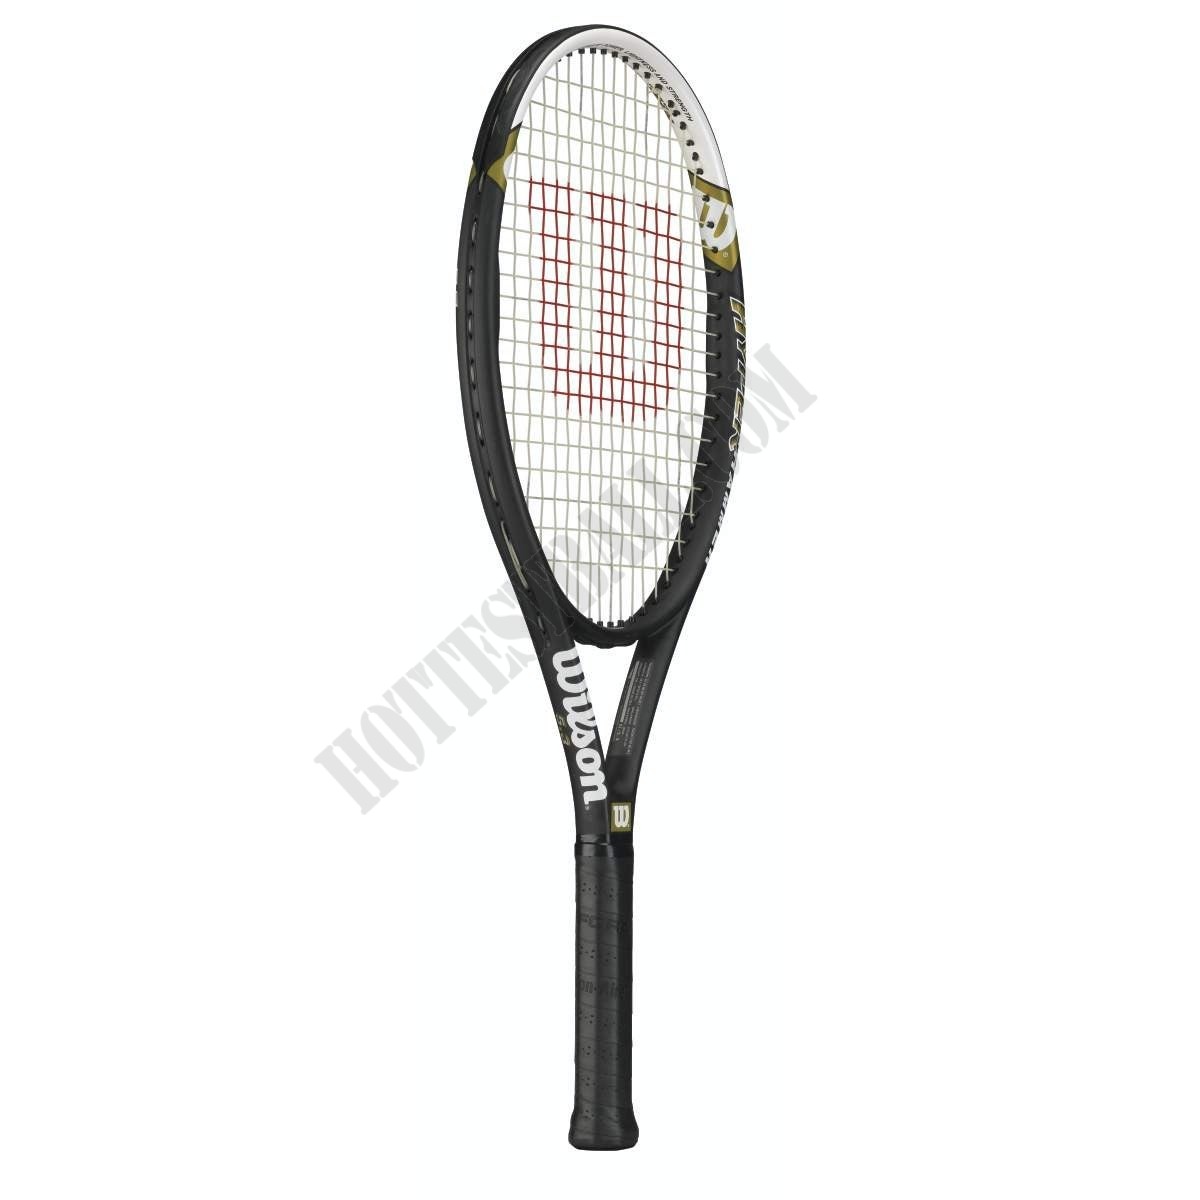 Hyper Hammer 5.3 Tennis Racket - Wilson Discount Store - -1